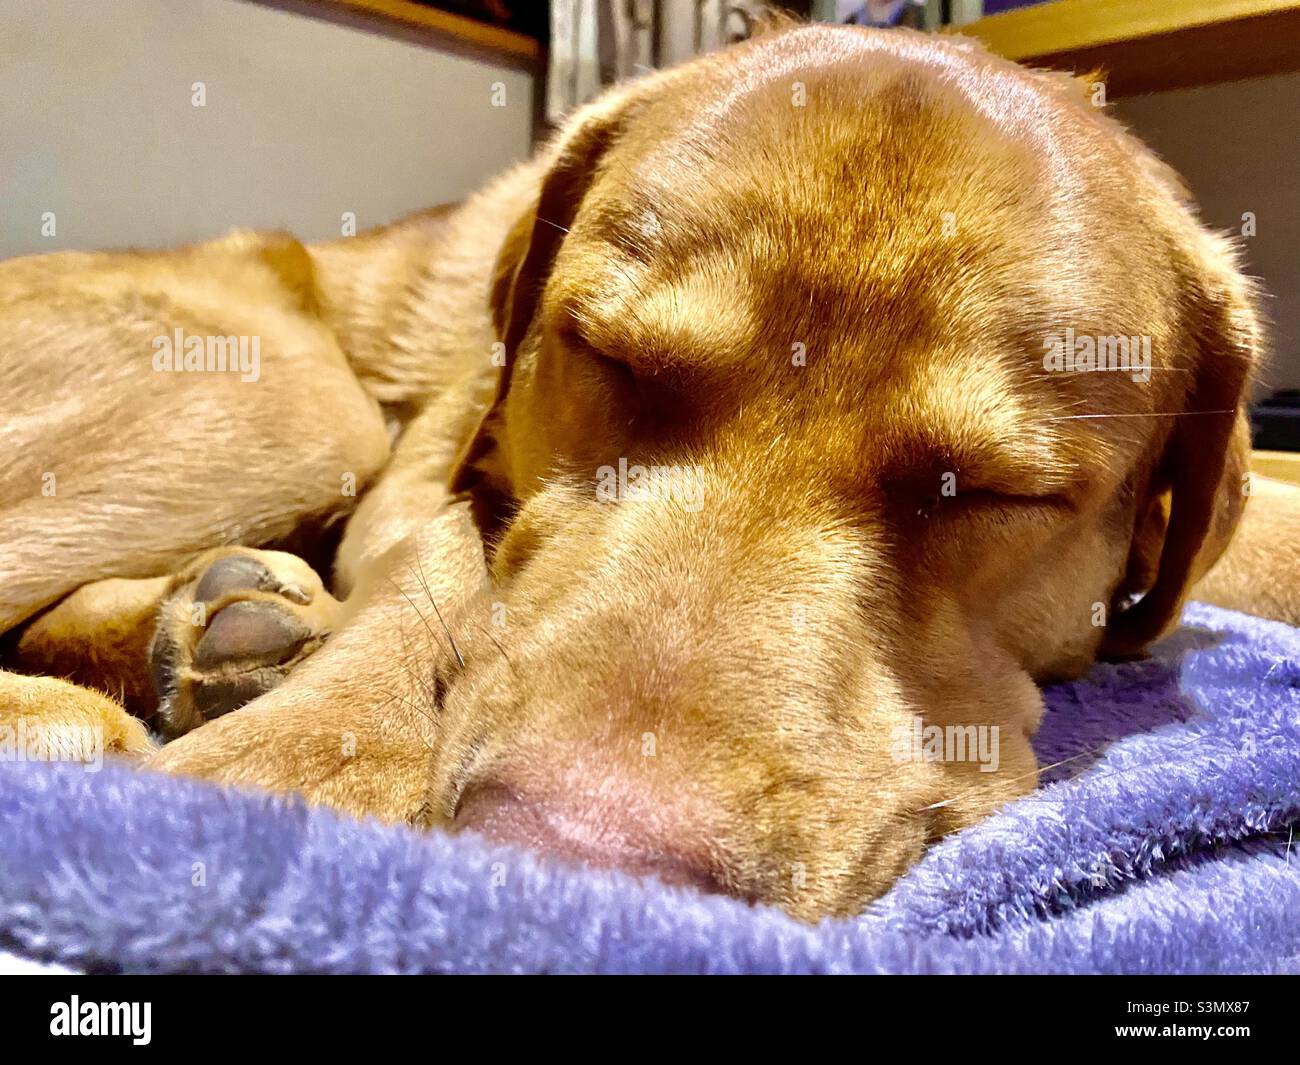 Close up of Sheprador dog sleeping on blanket Stock Photo